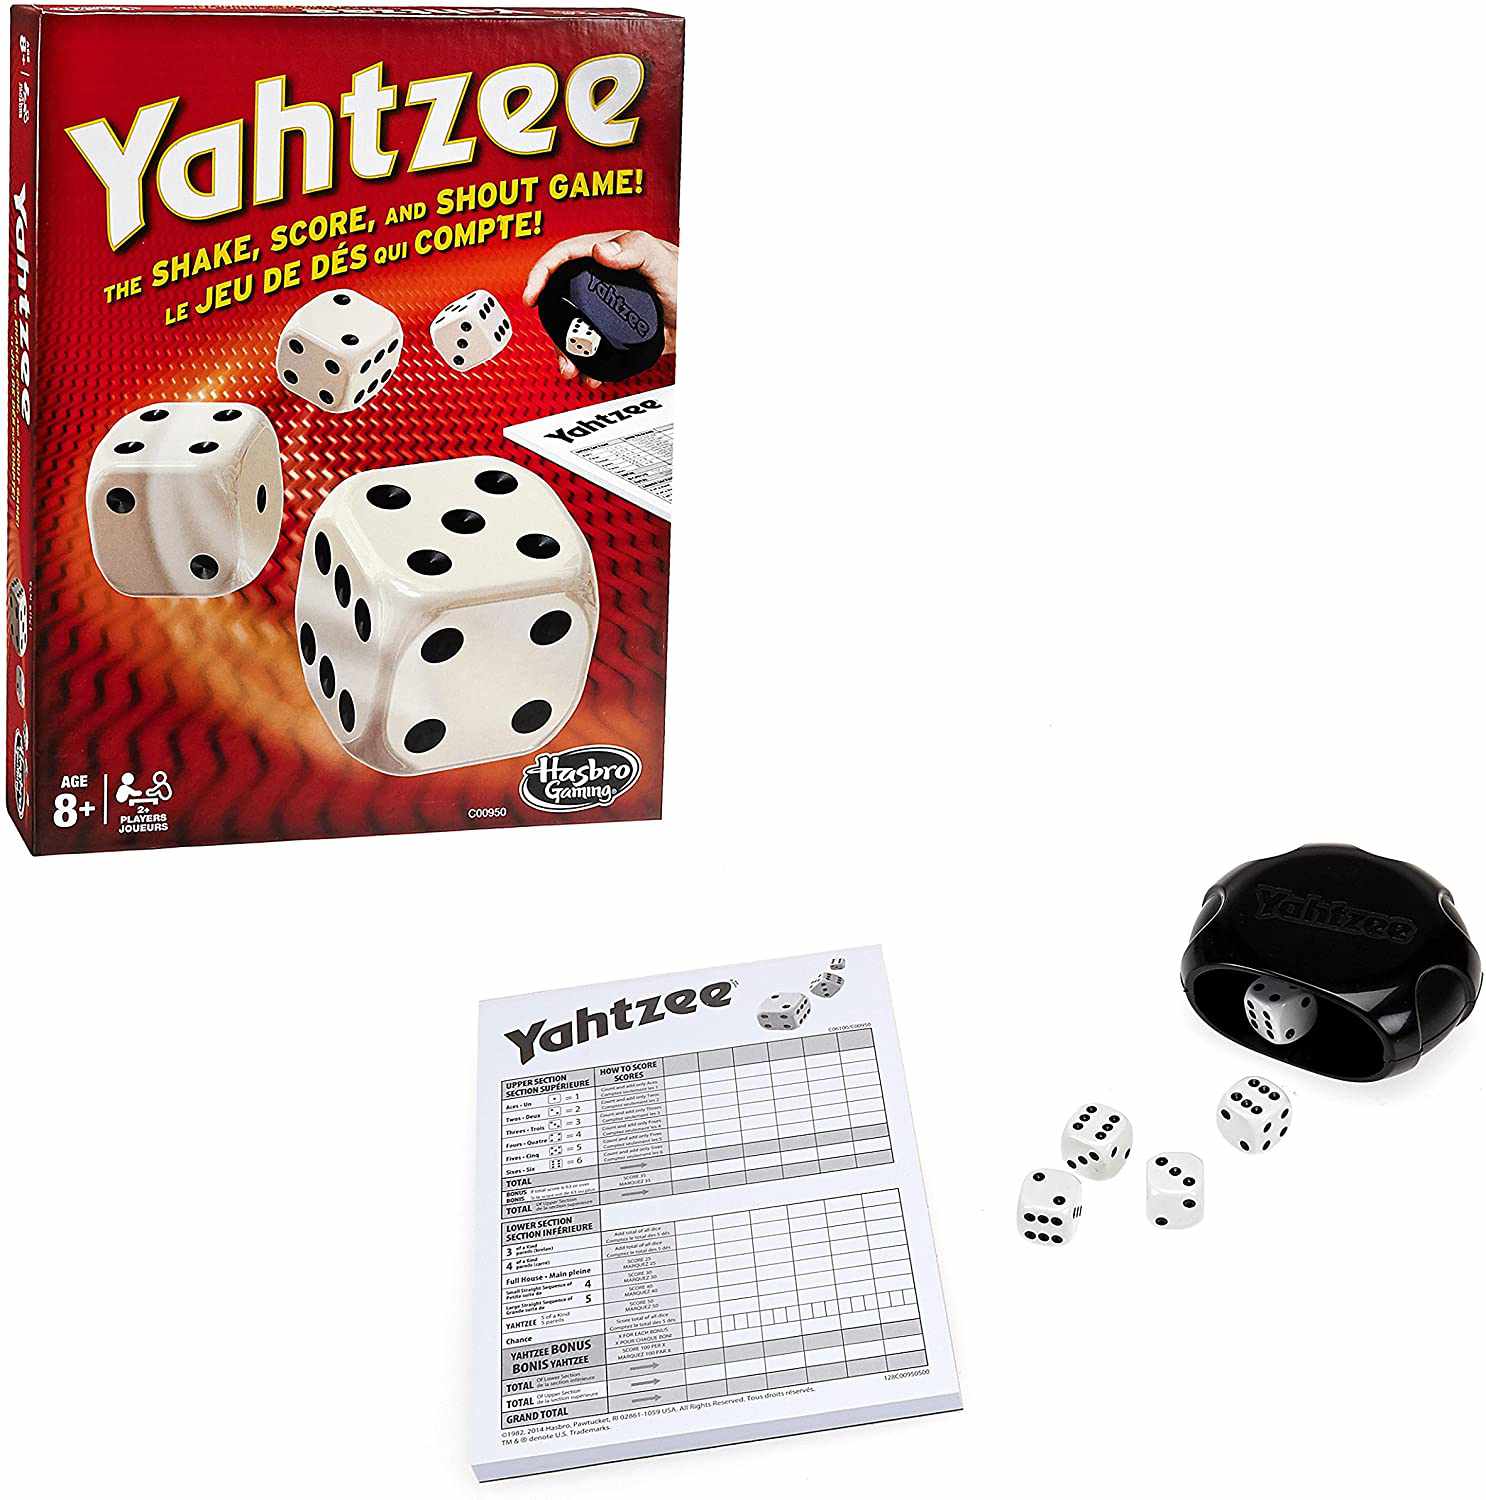 yahtzee game